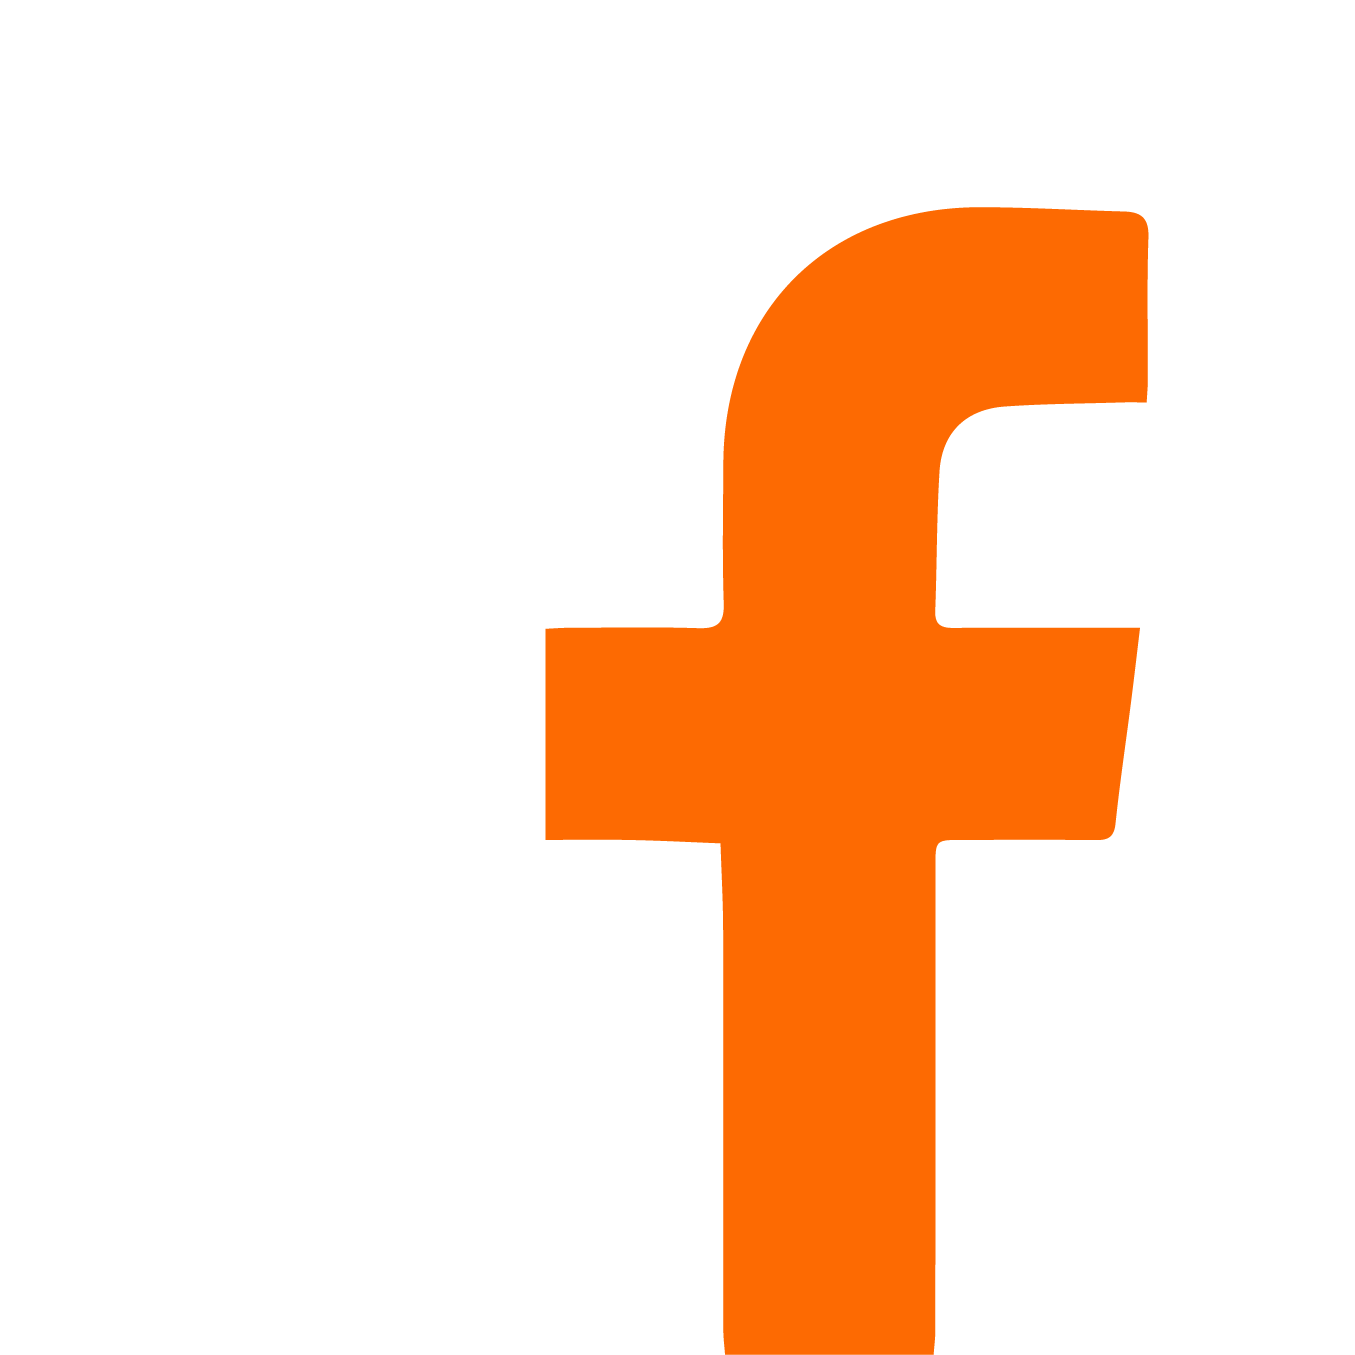 Facebok logo